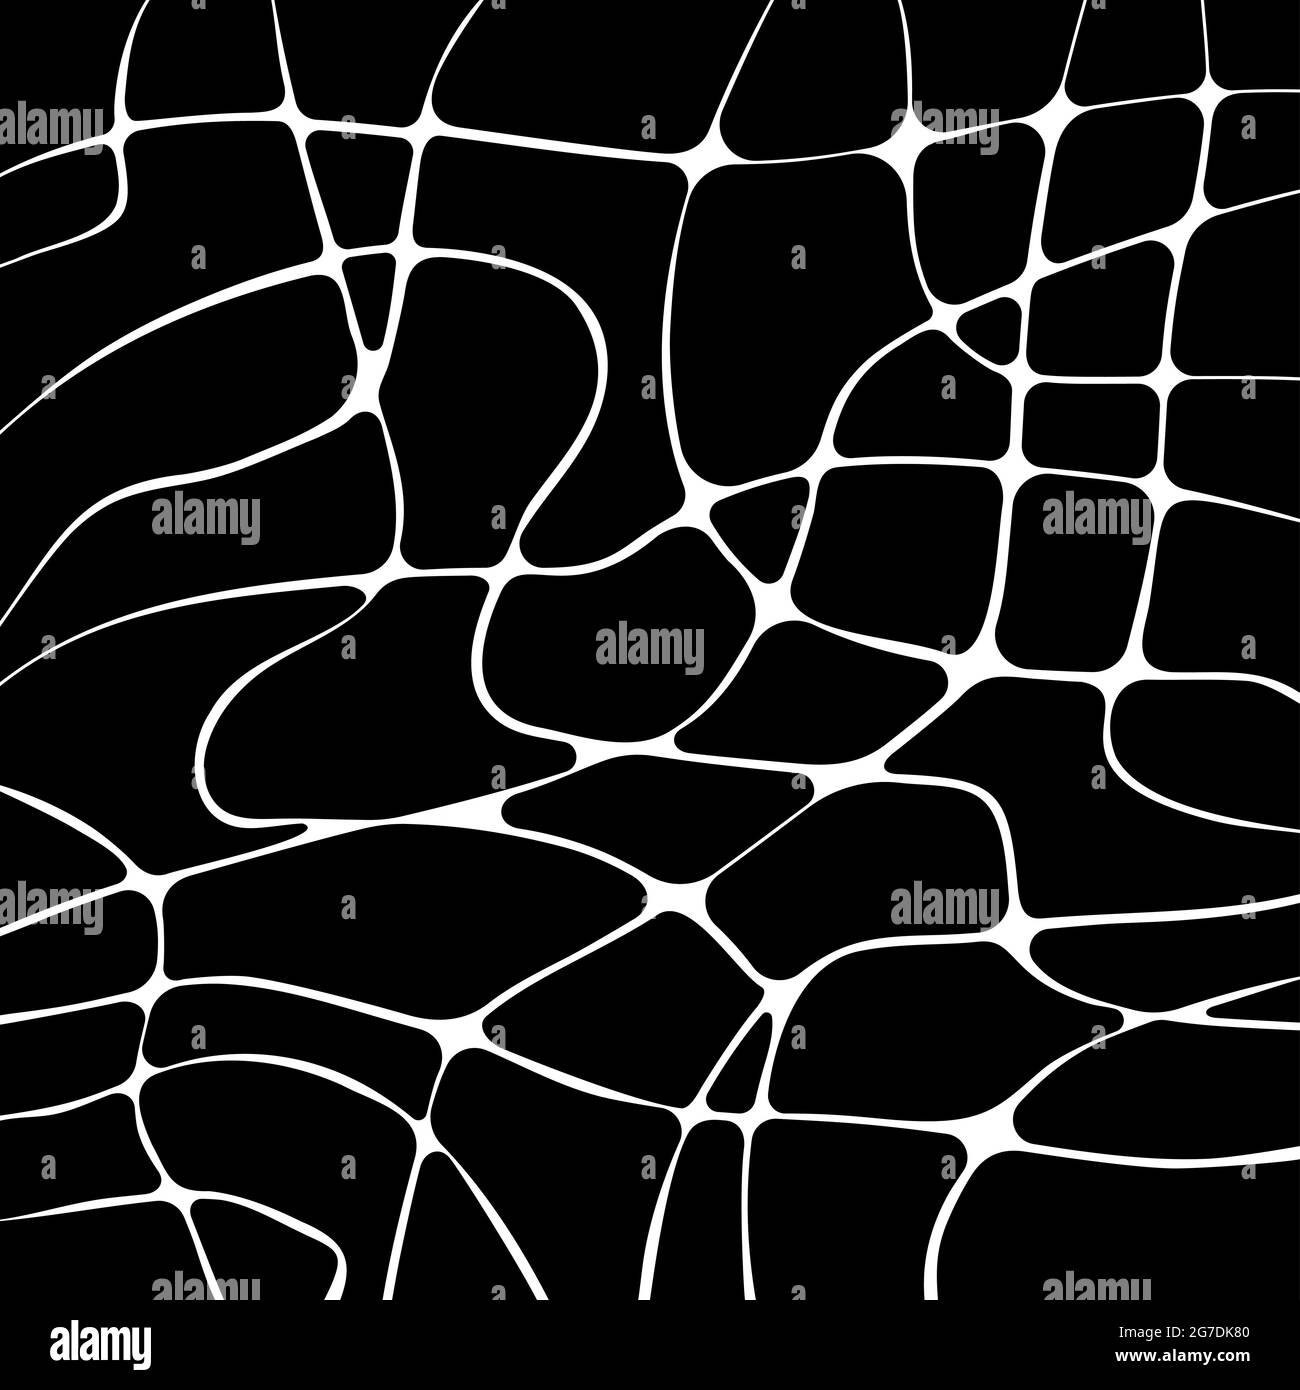 Schwarze Silhouetten-Muster, abstrakte abgerundete Ecken Formen Mosaikhintergrund mit welligen Streifen, Neuroart-Muster, neurographische psychedelische Vektor-illu Stock Vektor